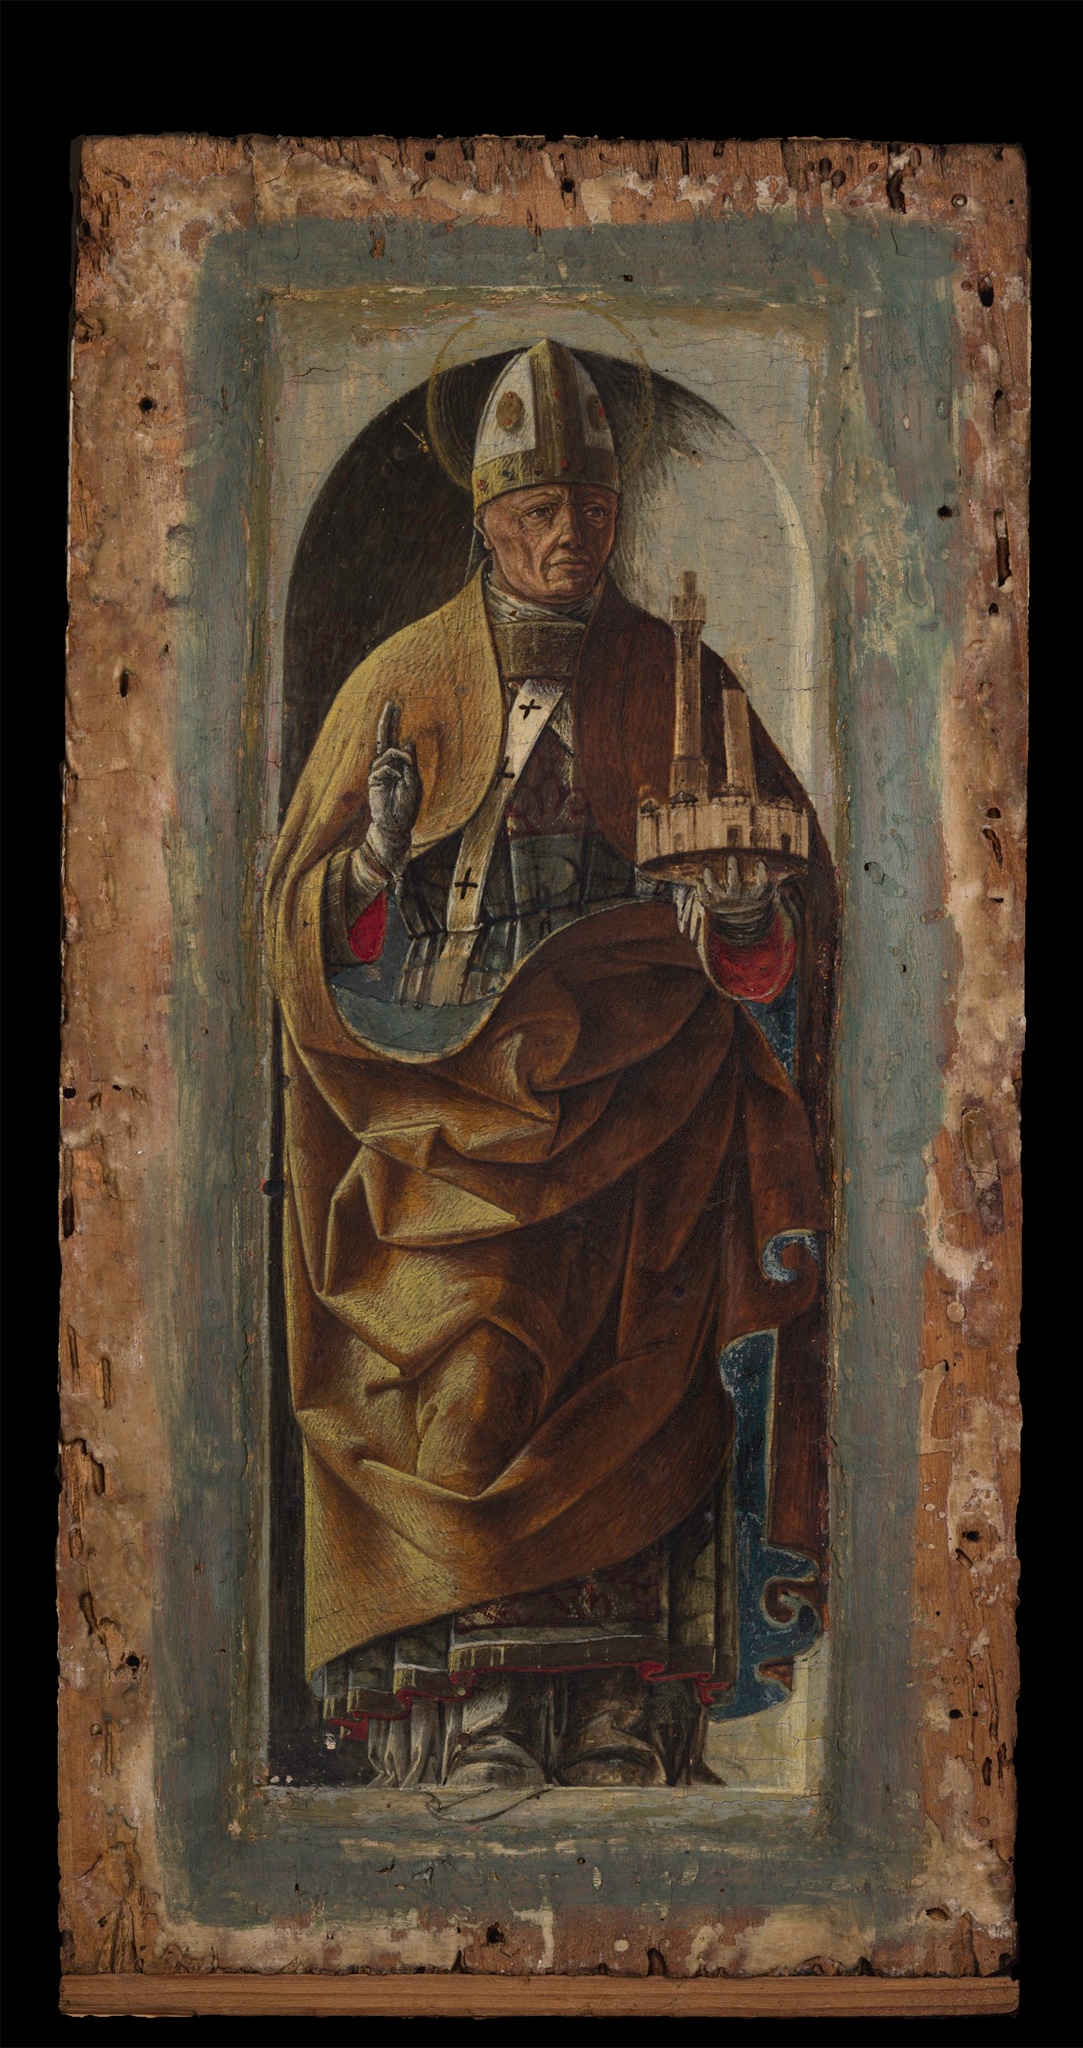 Ercole de’ Roberti (Ferrara, 1450 ca.–1496), San Petronio, 1470-73 ca., tempera su tavola, cm 26 x 14. Il dipinto era in origine uno dei riquadri che decoravano con figure di santi i pilastrini laterali del polittico Griffoni, dipinto da Francesco del Cossa per la basilica di San Petronio a Bologna nel 1470-73. L’artista ferrarese si avvalse della collaborazione del giovane Ercole de’ Roberti, cui fu affidata l’esecuzione degli scomparti minori del polittico e della predella (oggi Pinacoteca Vaticana). Da San Petronio a Bologna, l'opera passa nelle collezioni di Ferrara, ed entra in Pinacoteca nel 1973 con la donazione Vendeghini.